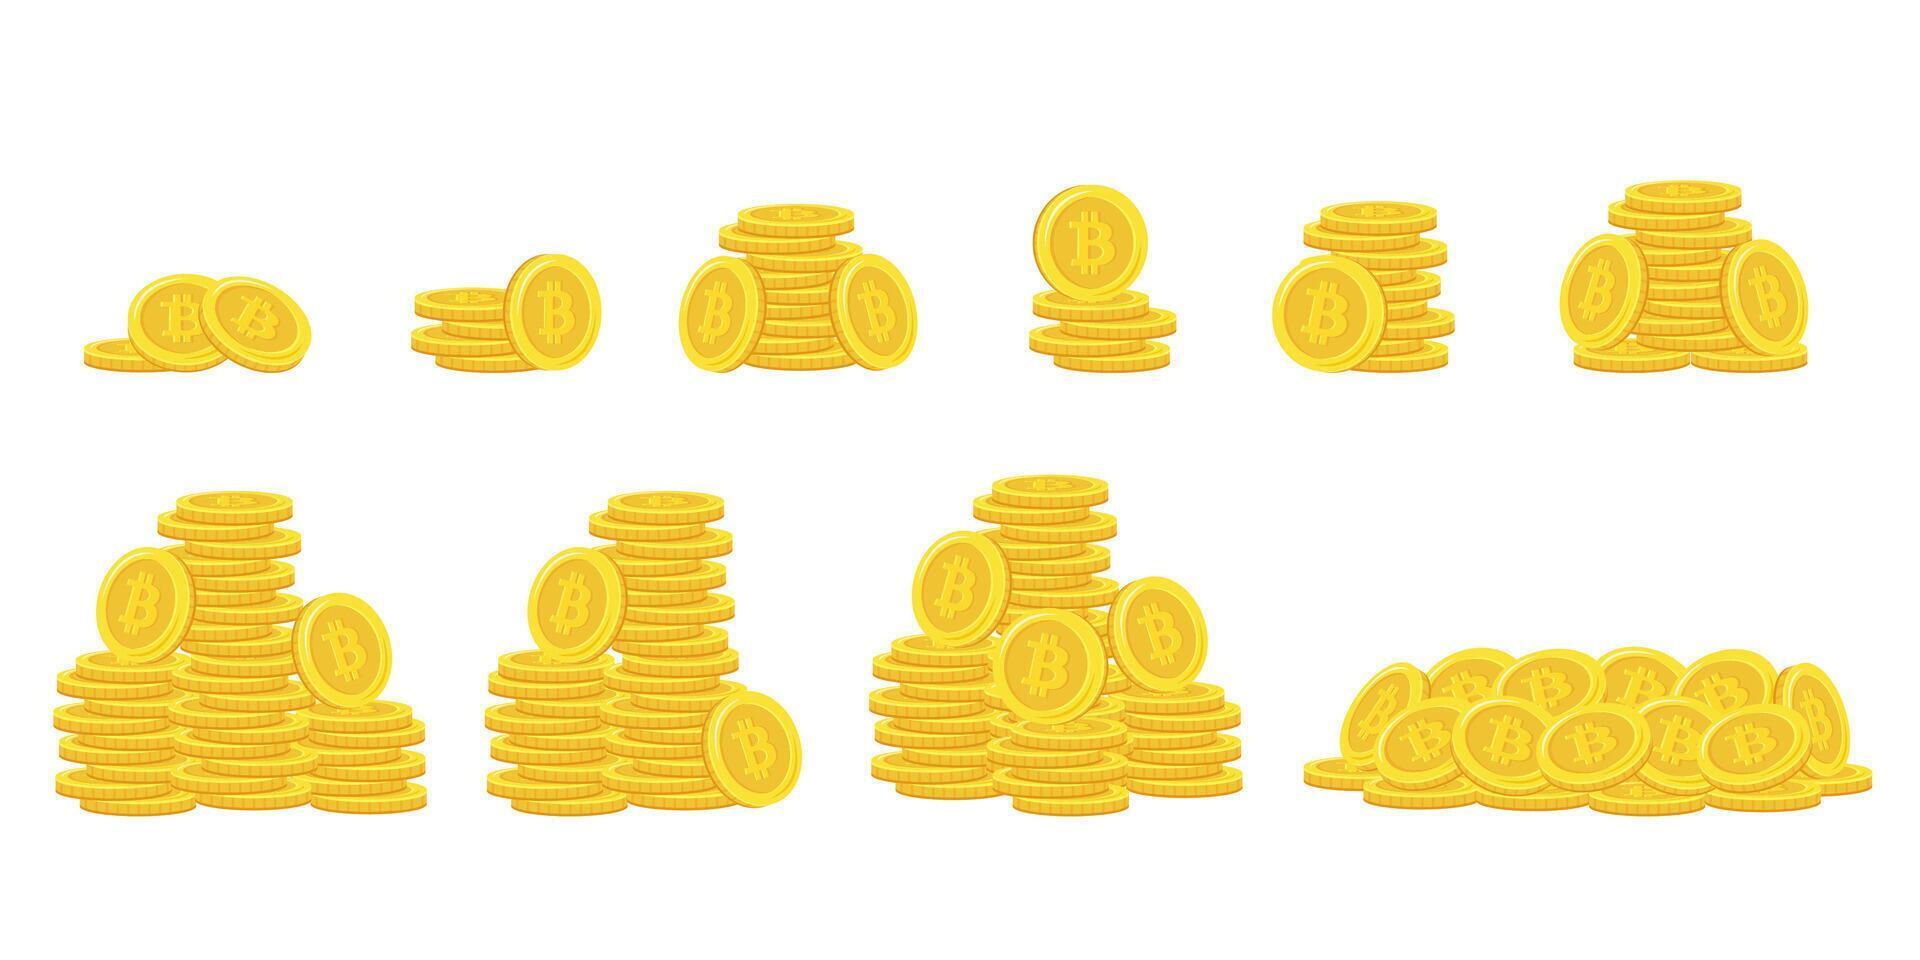 Bitcoin. empiler de or pièces de monnaie. d'or pièce de monnaie pile, argent piles et ors pieux. vecteur